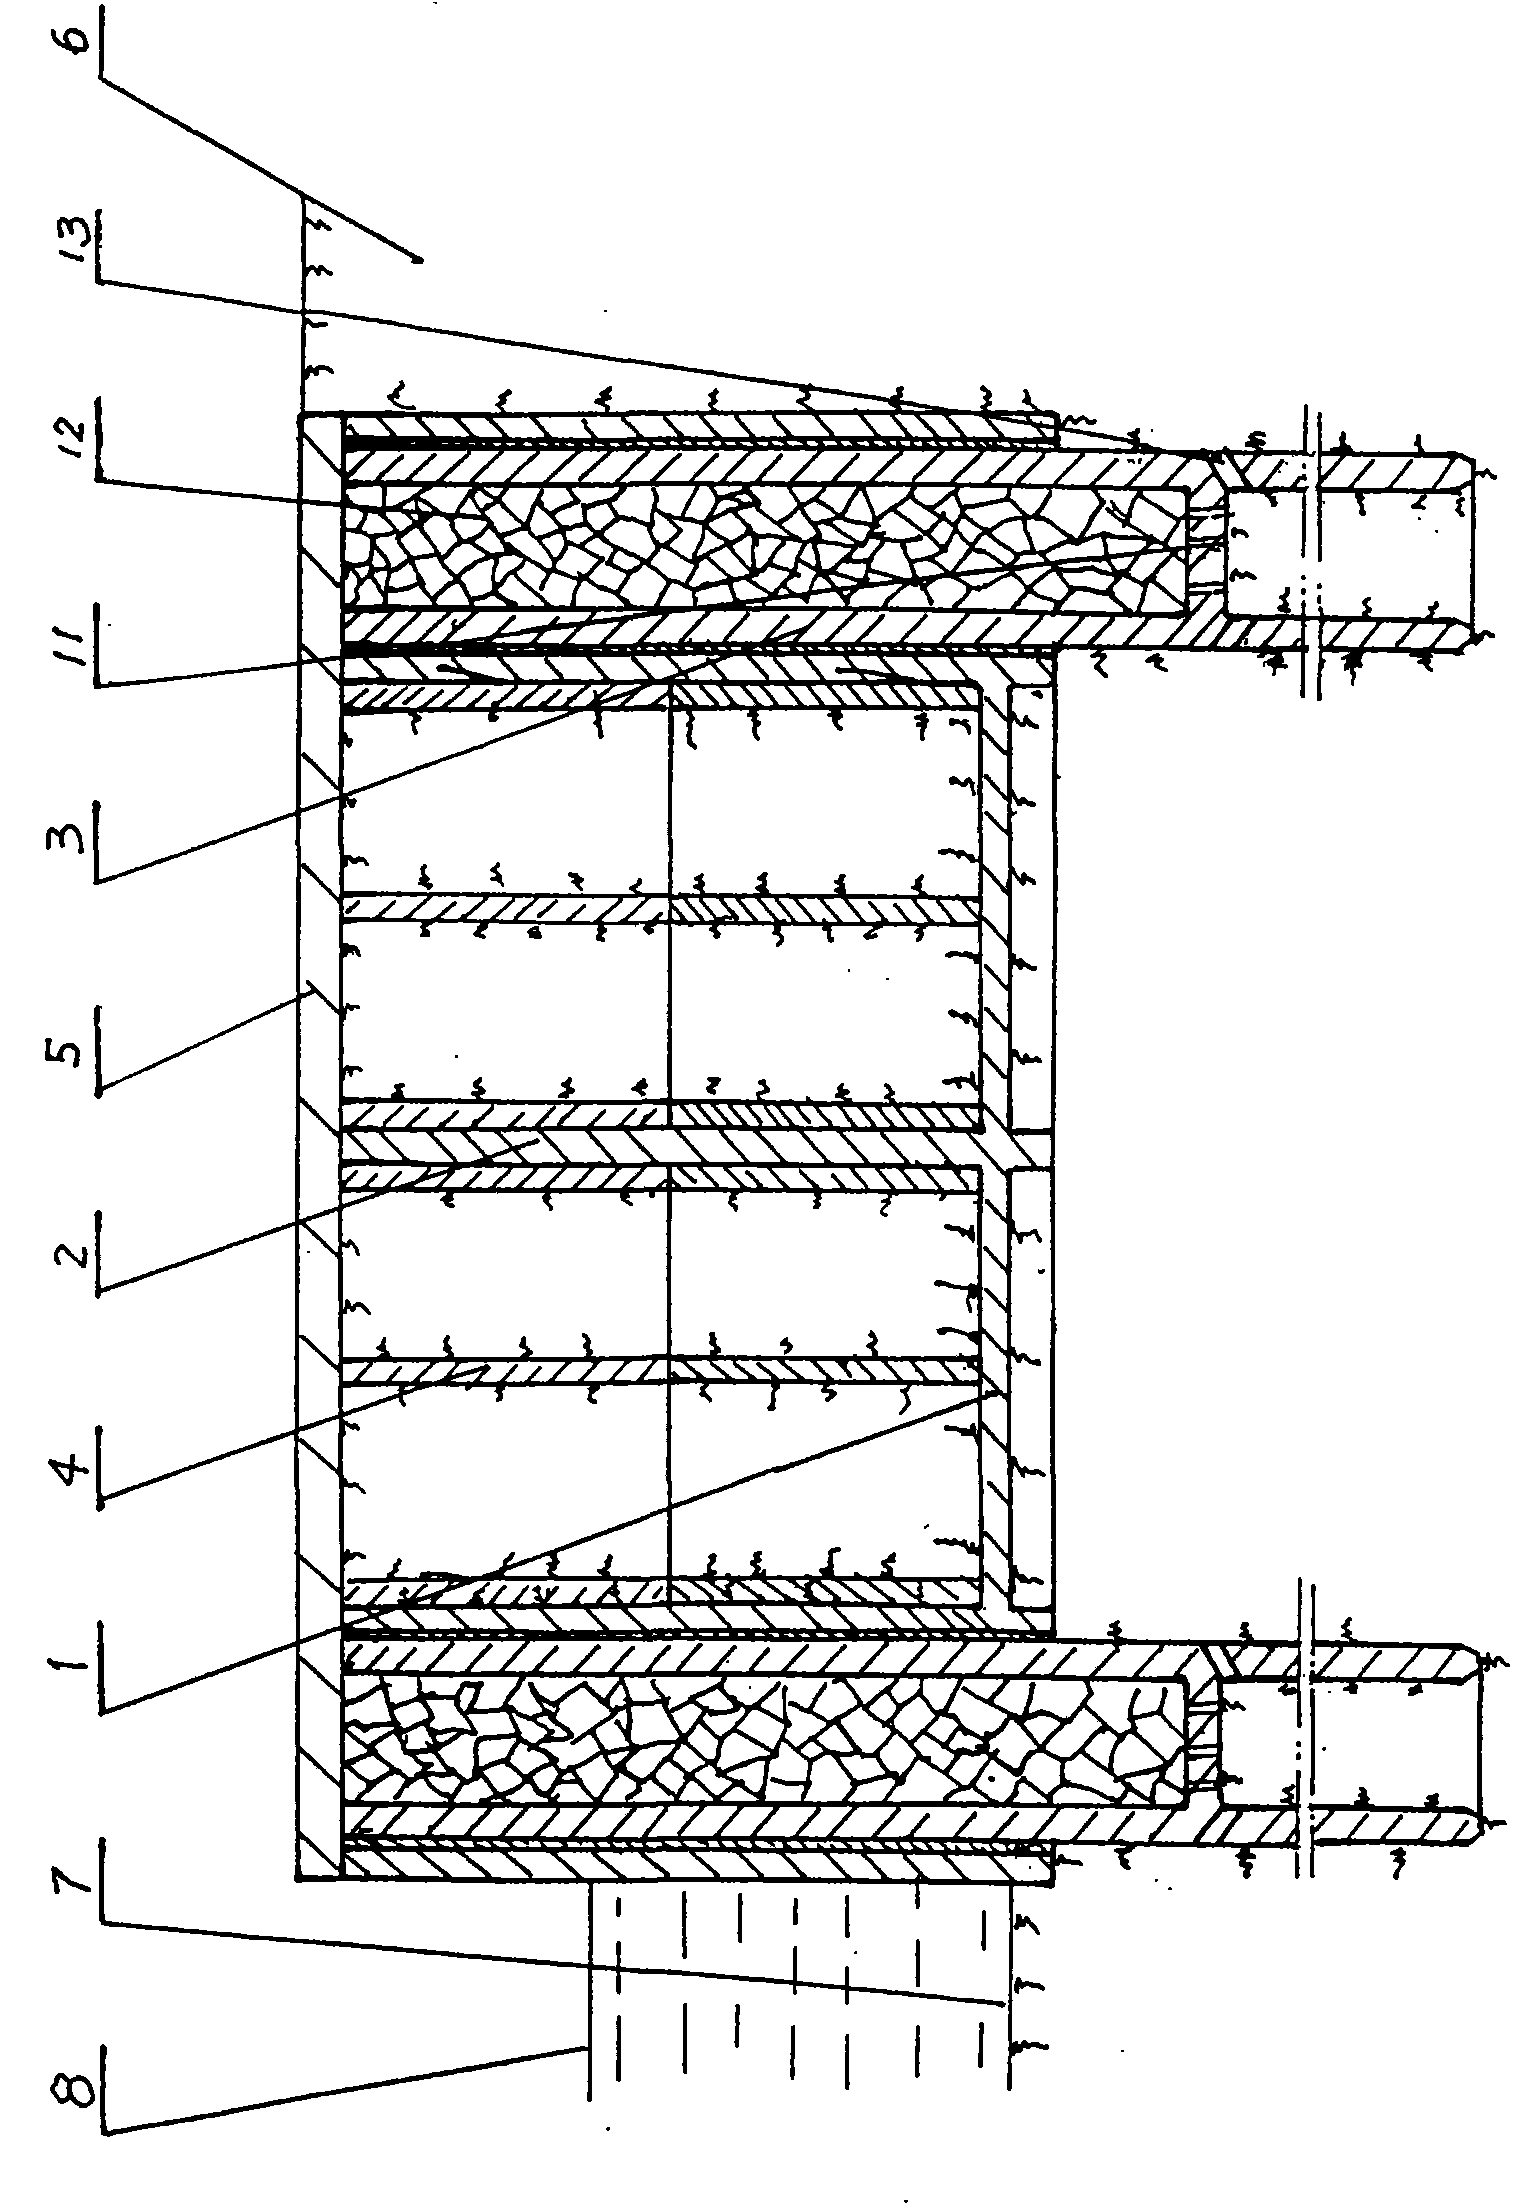 Method for building harbor wharf based on soft soil